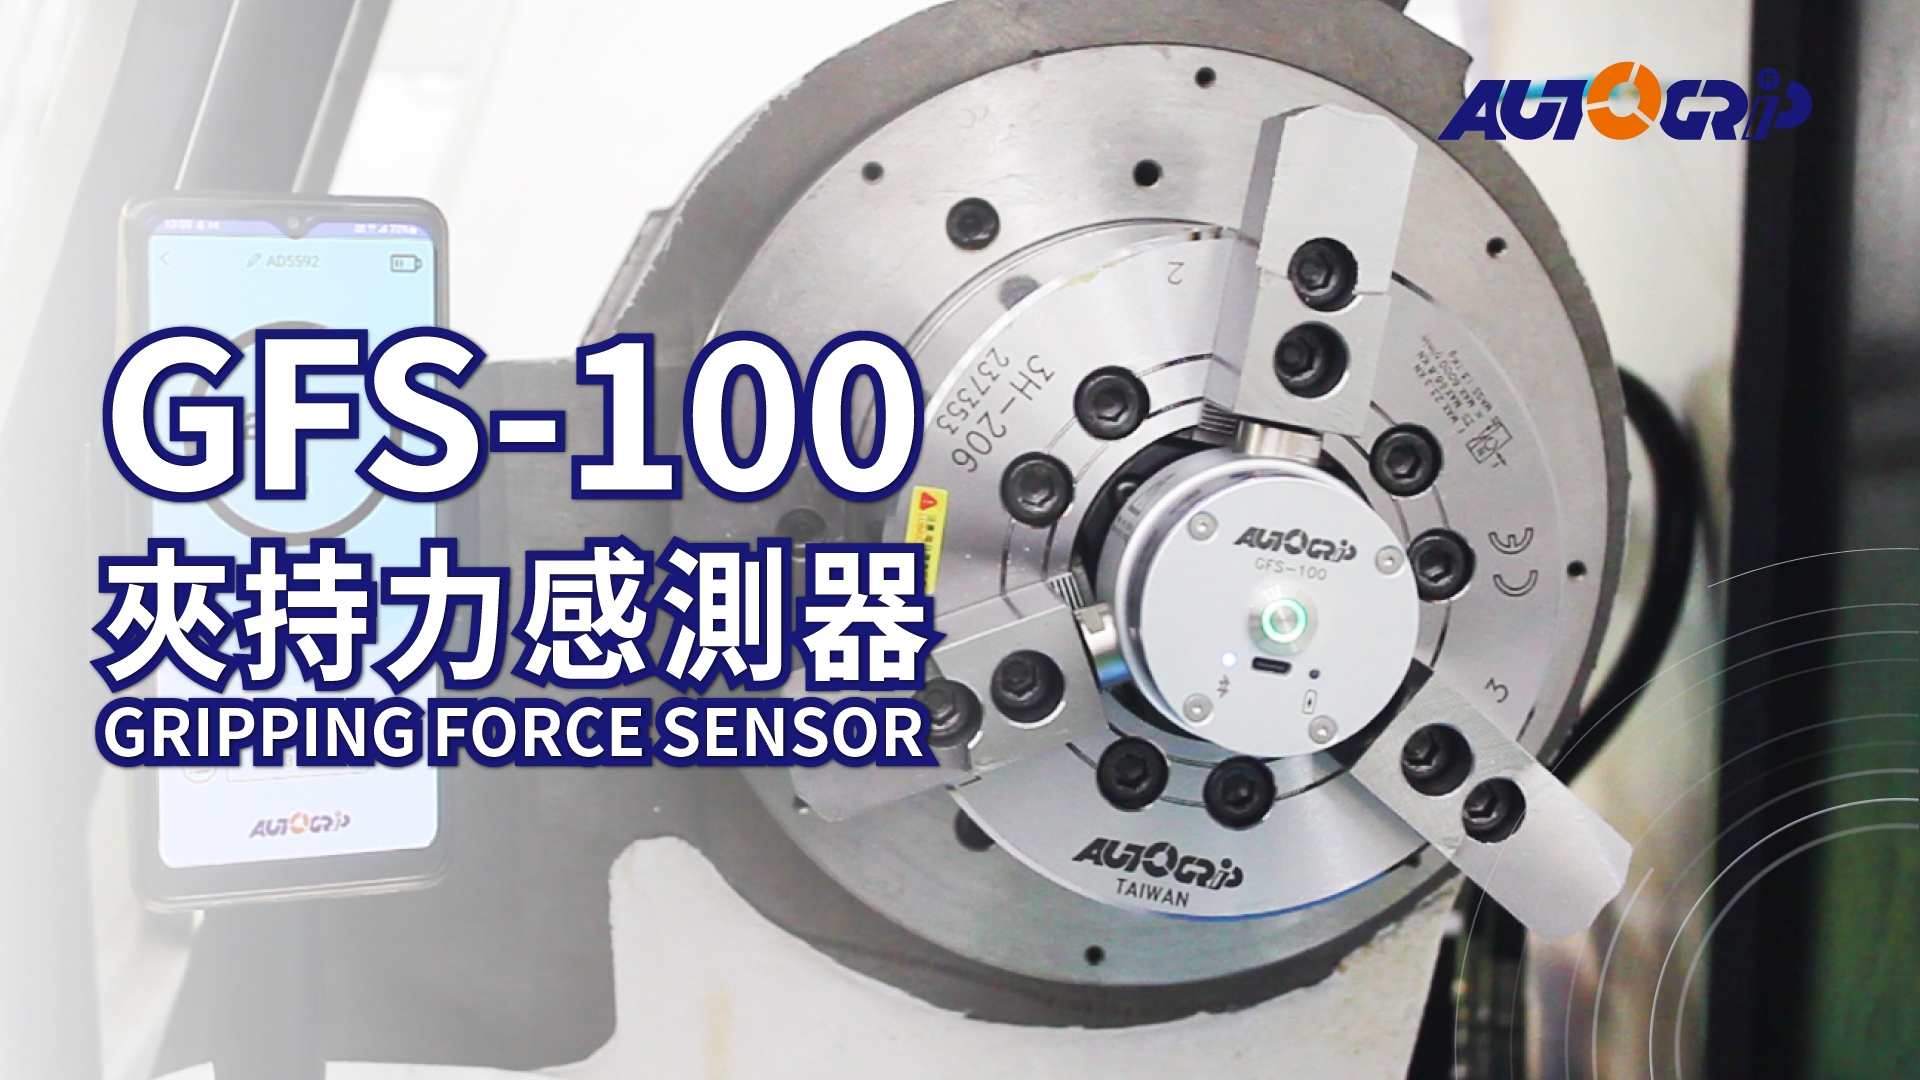 
                                Gripping force sensor(GFS-100)
                            